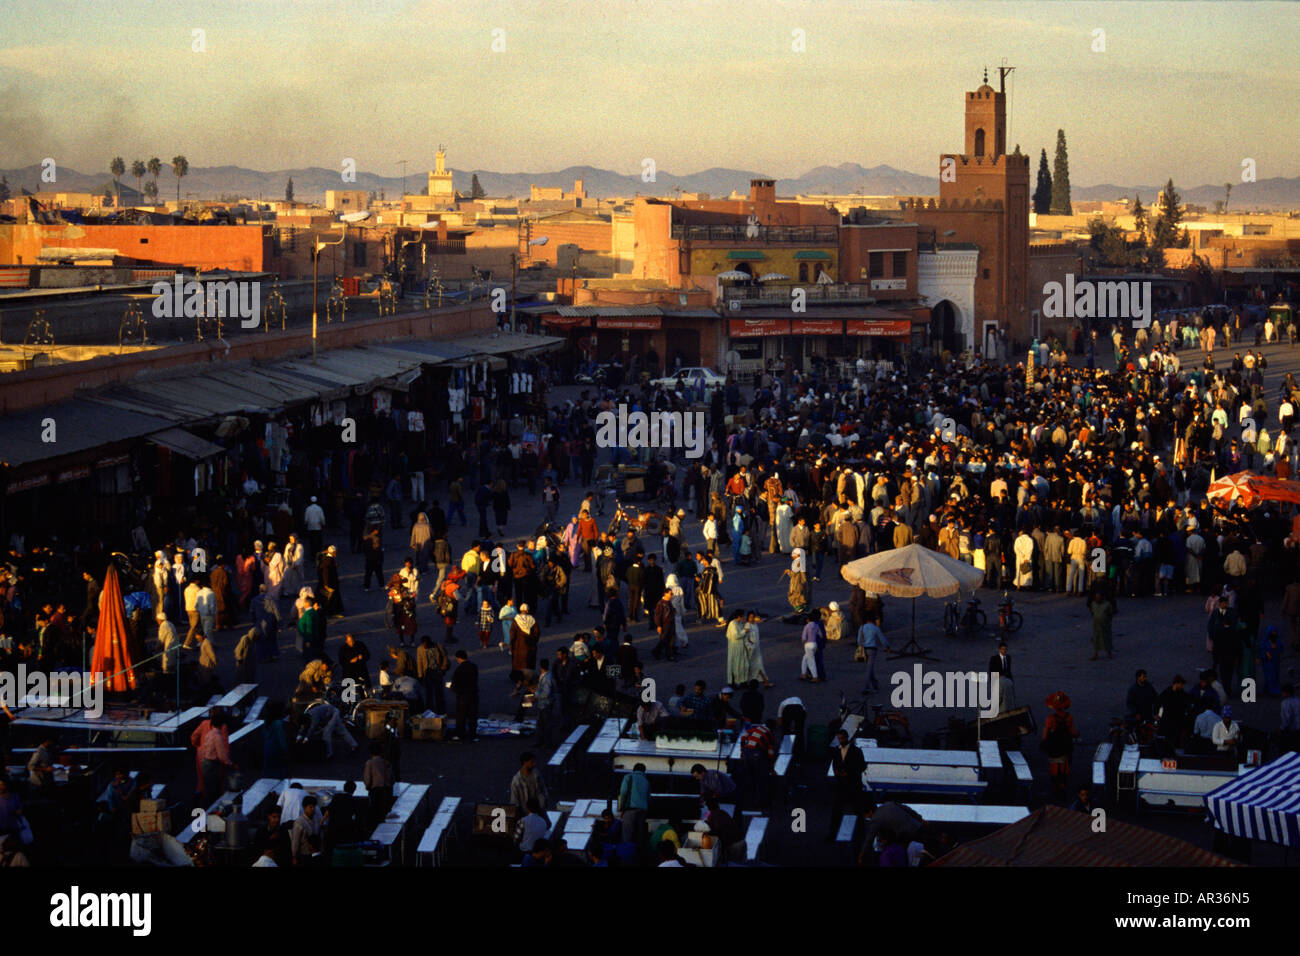 Jamma el-Fna, Marrakech, Morocco North Africa Stock Photo